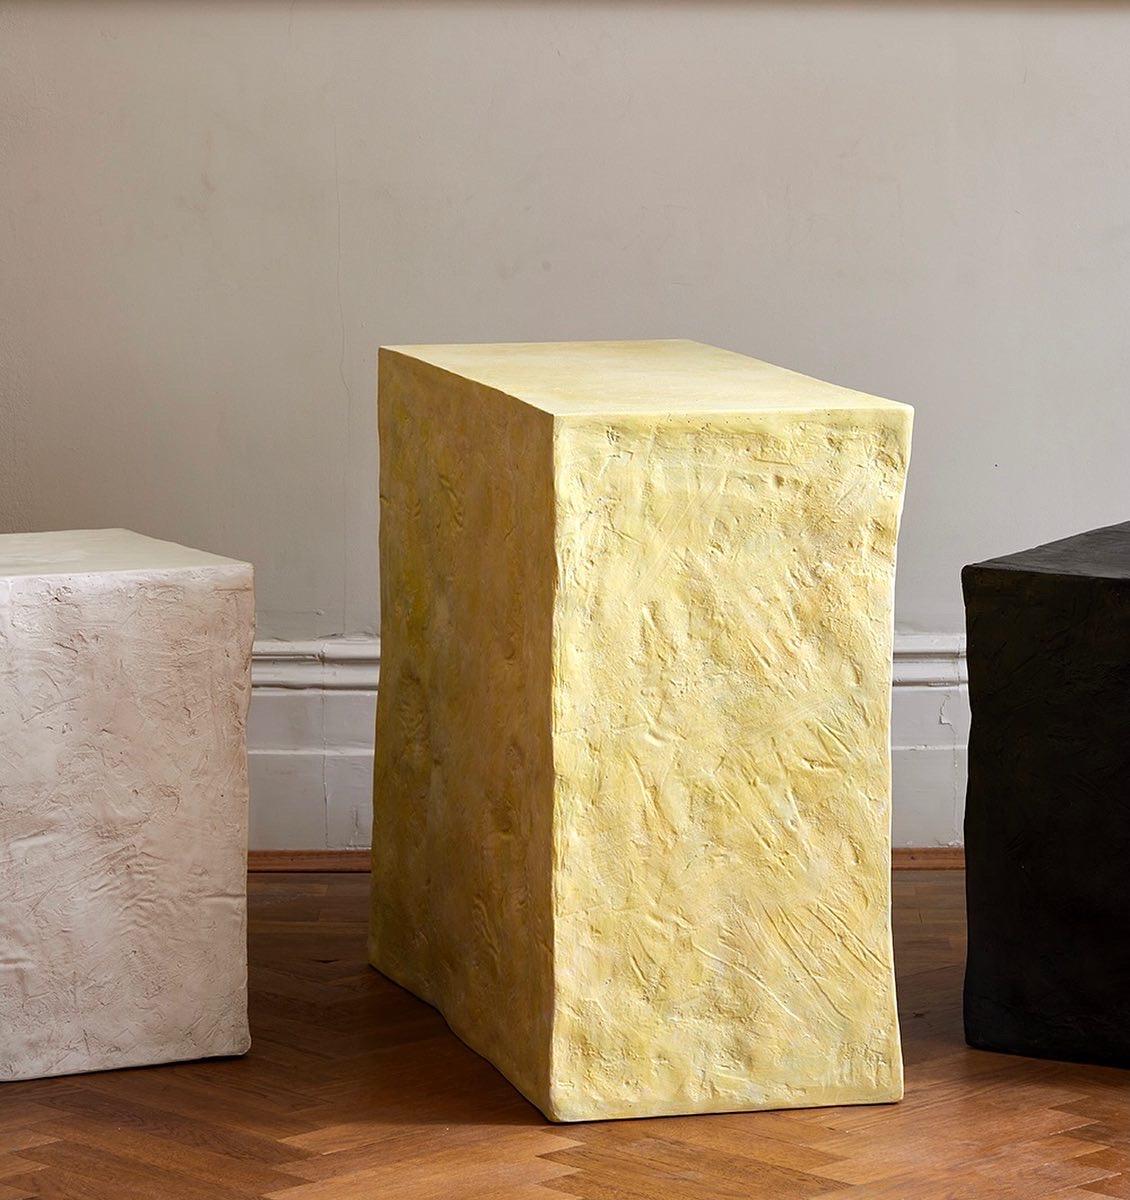 Le cuboïde Manhattan est une table d'appoint d'une simplicité trompeuse, créée par l'artiste-designer Margit Wittig, qui peut se transformer en siège sculptural.
Il reproduit une forme que Margit affectionne et qu'elle a déjà utilisée dans des